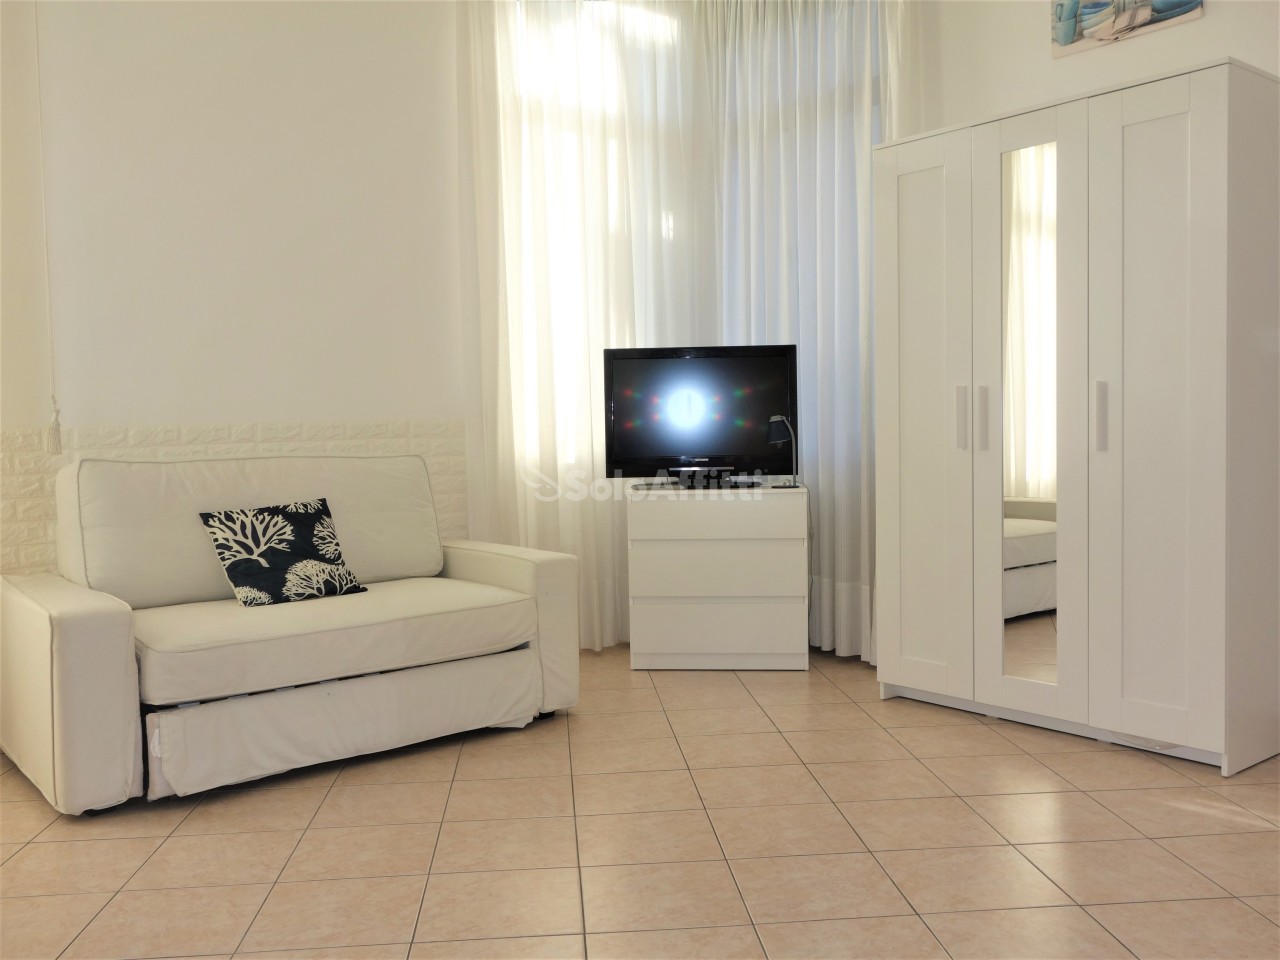 Appartamento in affitto a SanRemo, 2 locali, prezzo € 600 | PortaleAgenzieImmobiliari.it